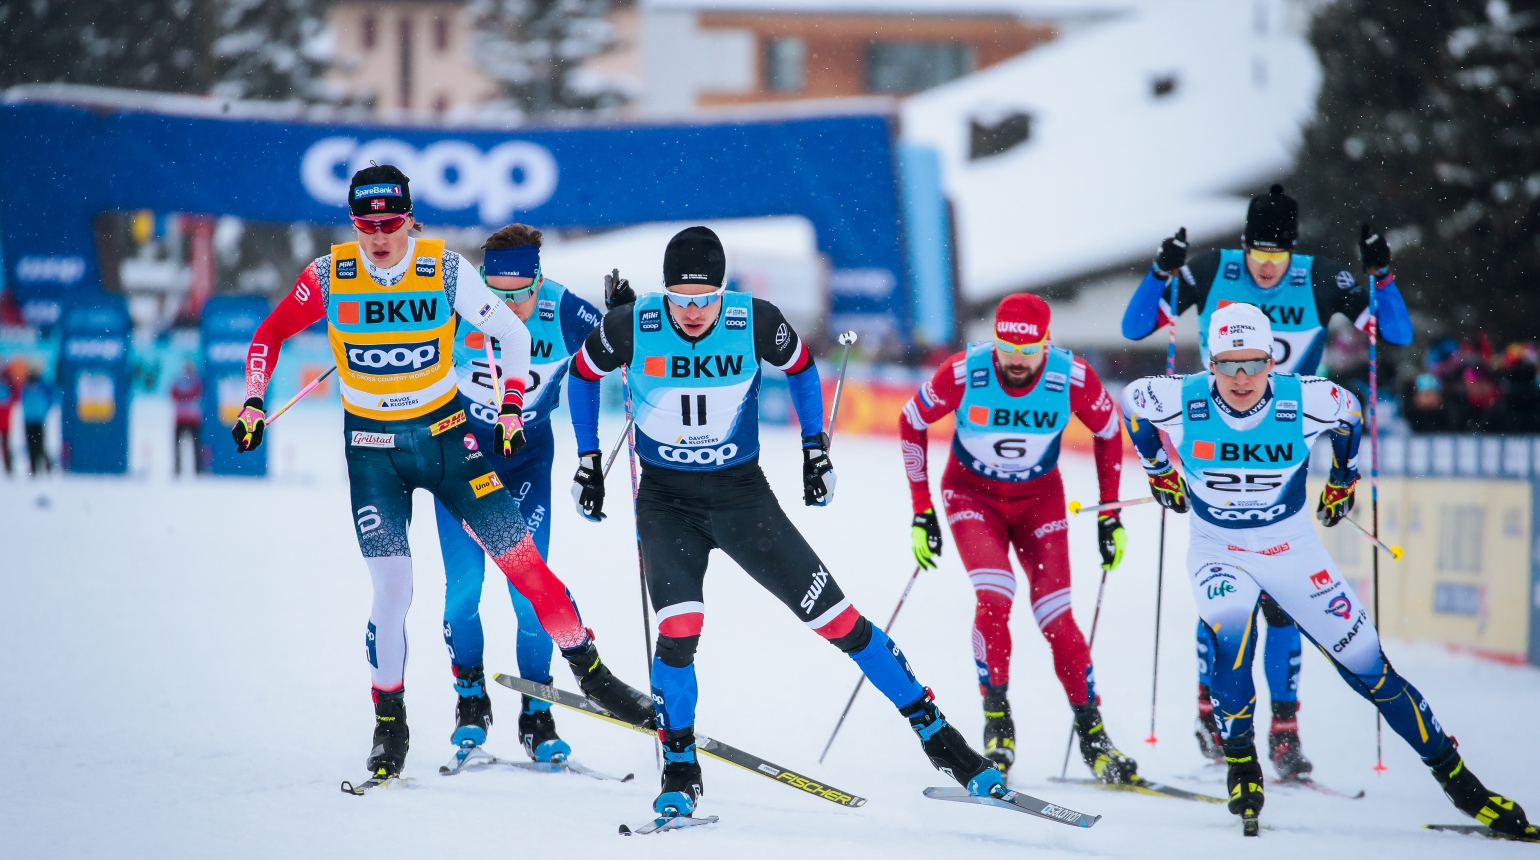 Fantastický výkon českých běžců ve sprintu! V Davosu jich pět prošlo do čtvrtfinále, nejlepší 14. Novák